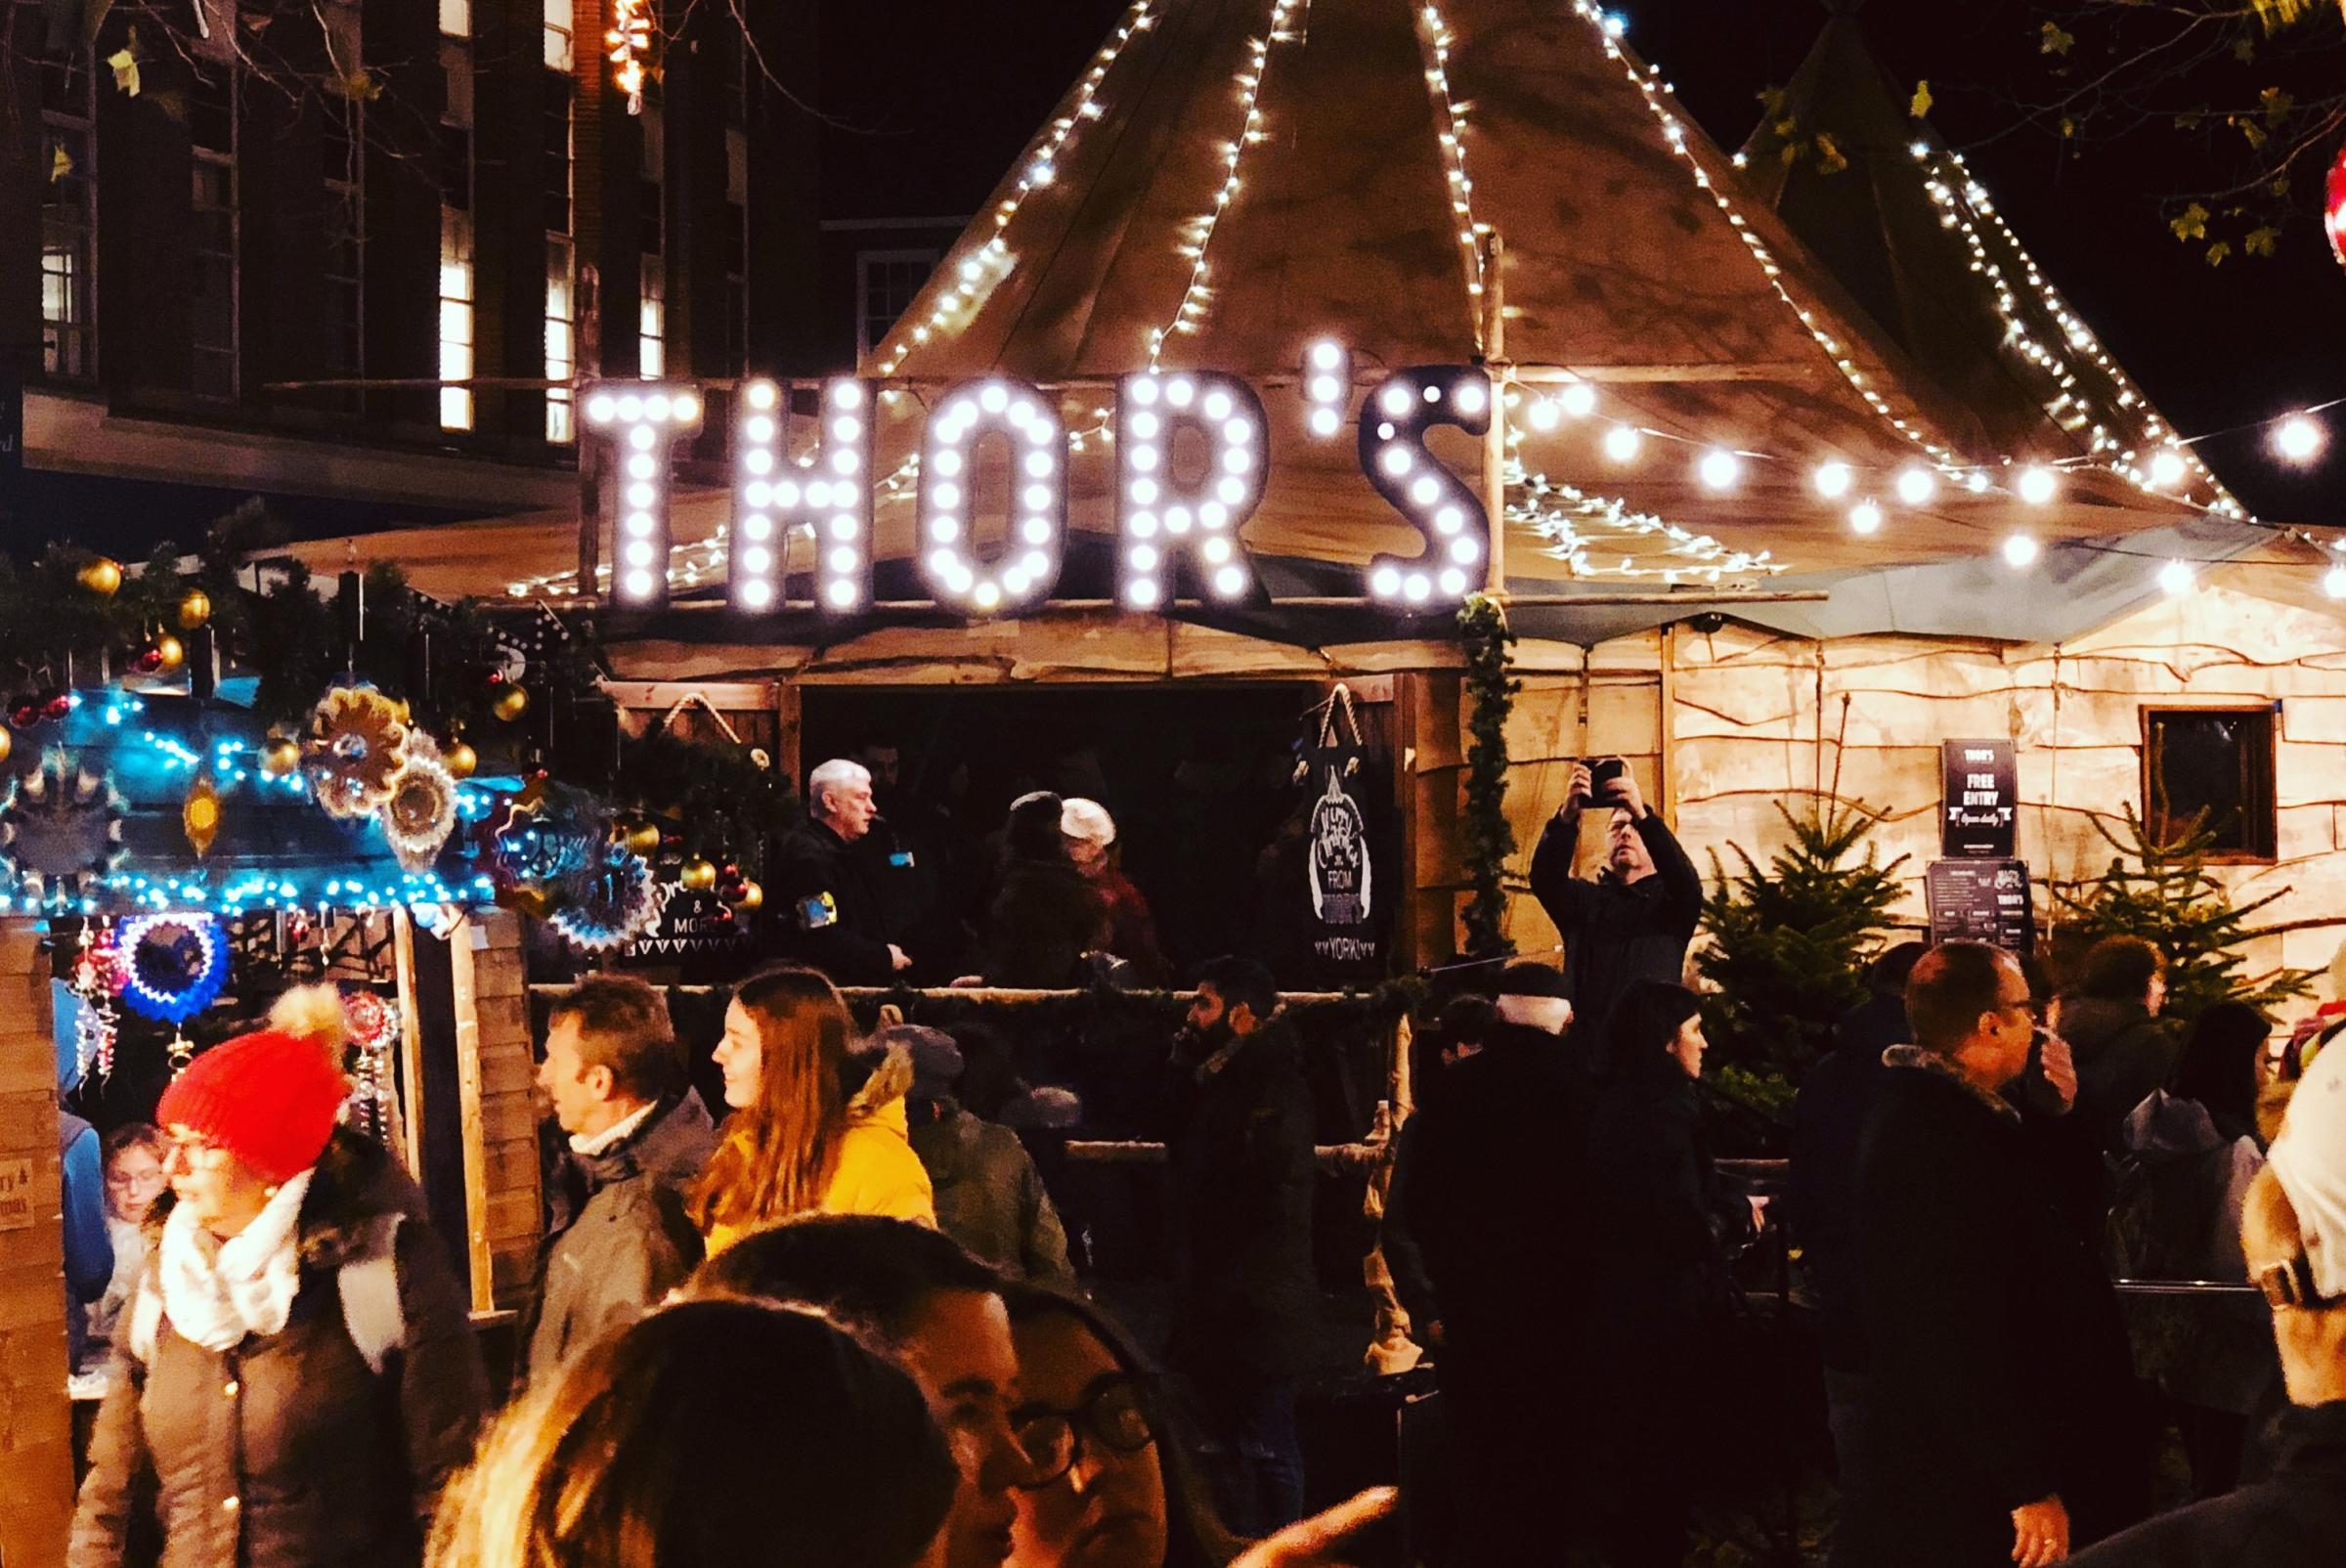 Thor’s tipi bar to return to York for Christmas